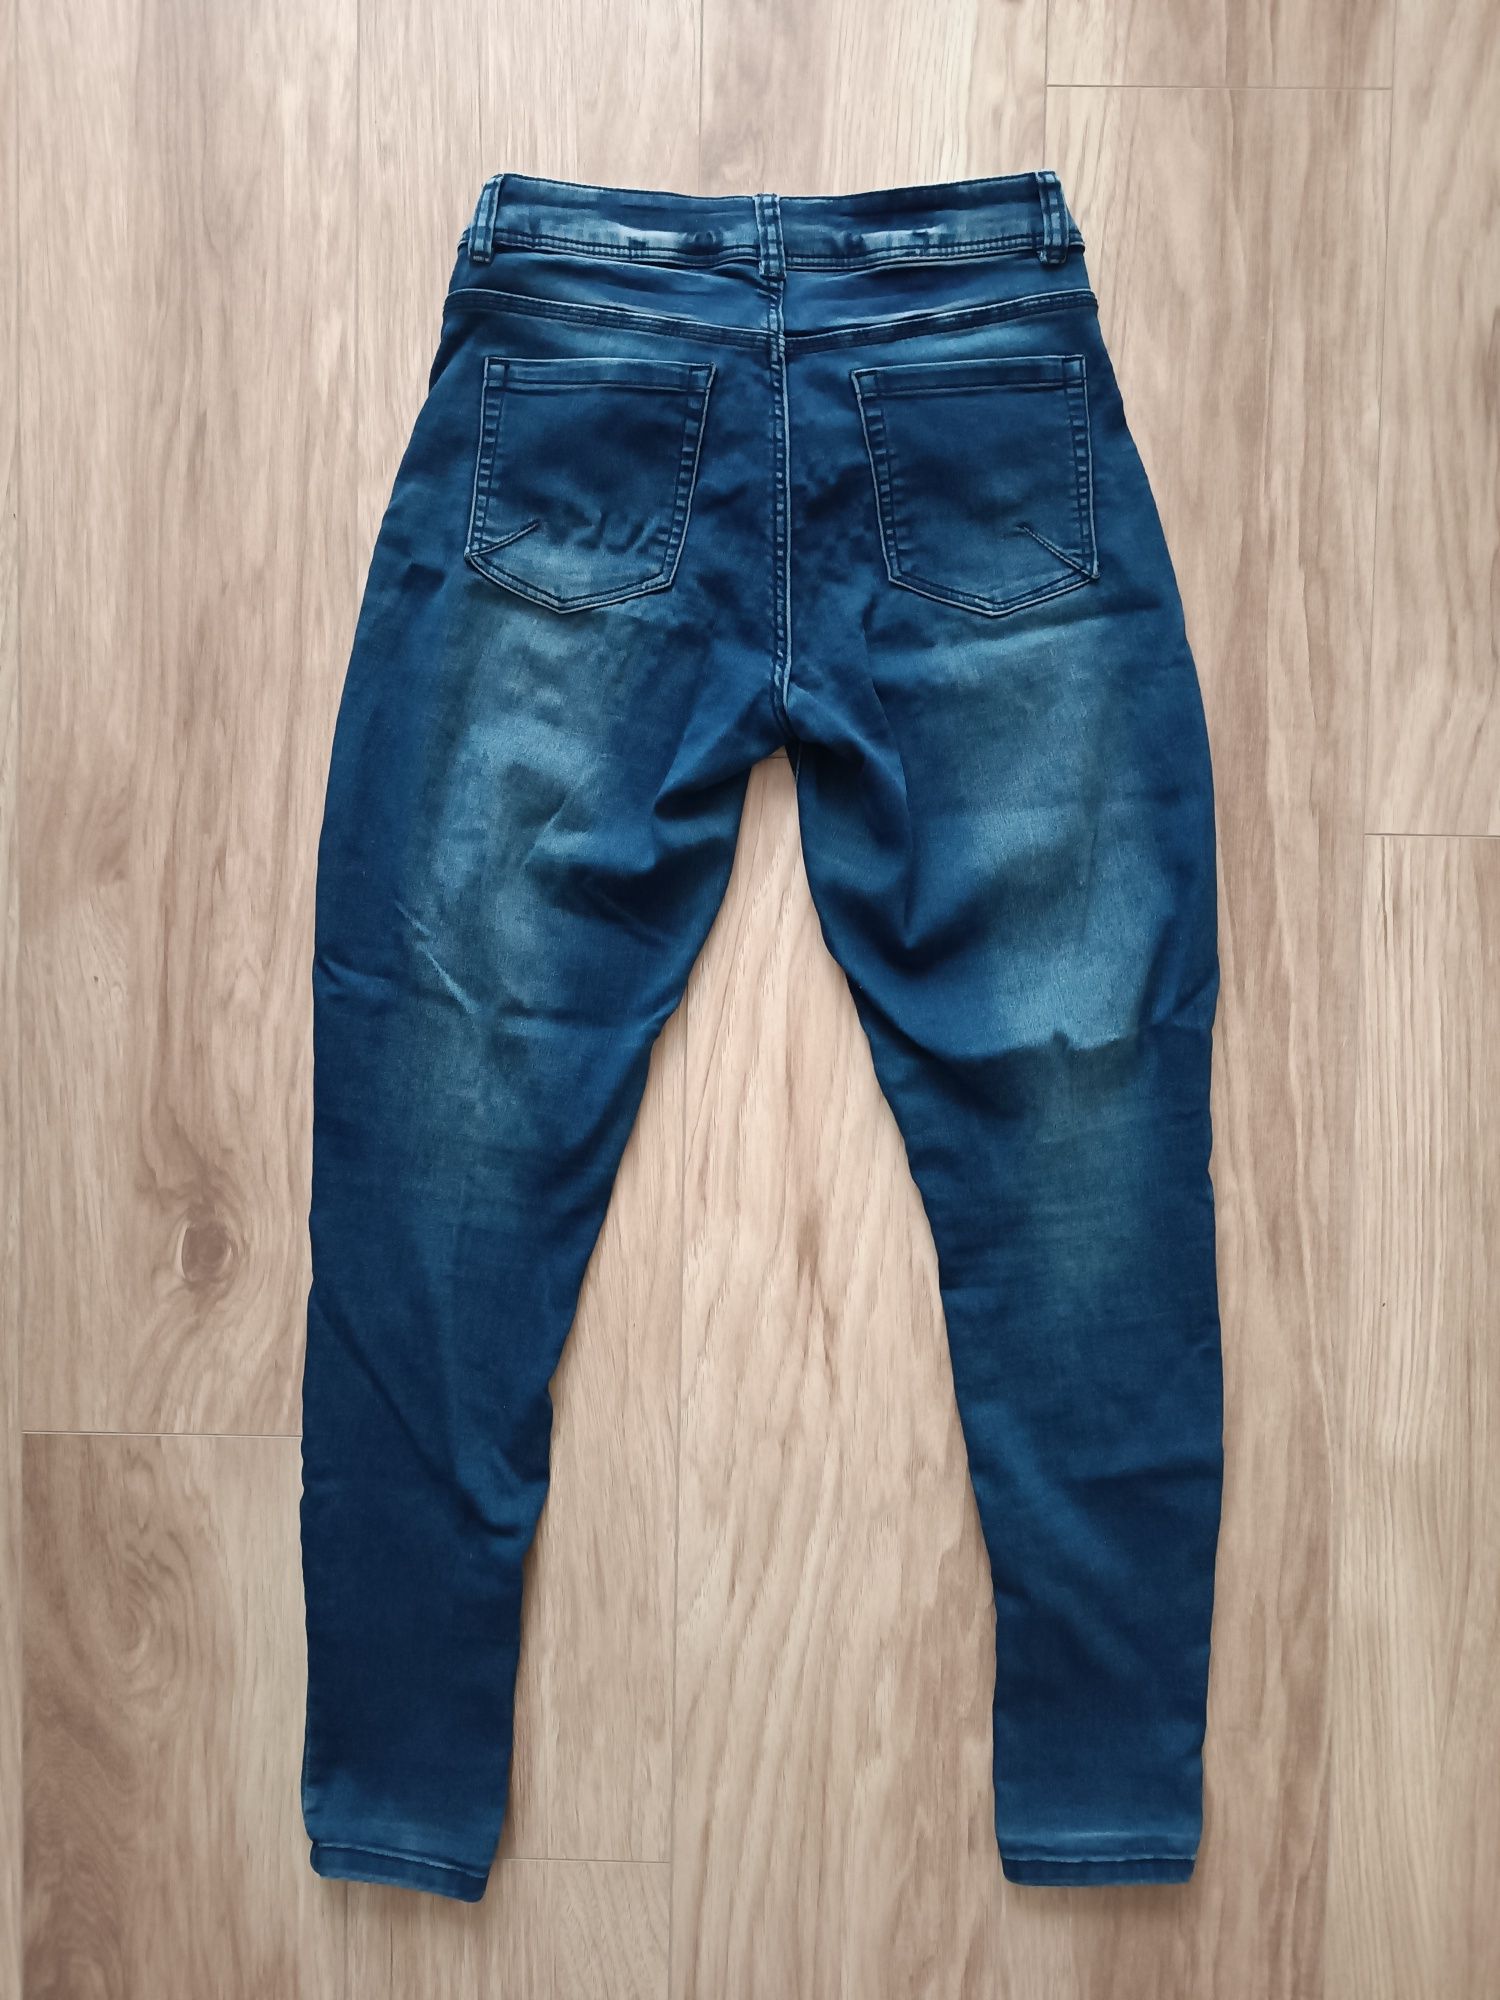 Granatowe niebieskie jeansy spodnie skinny rurki s/m 36/38